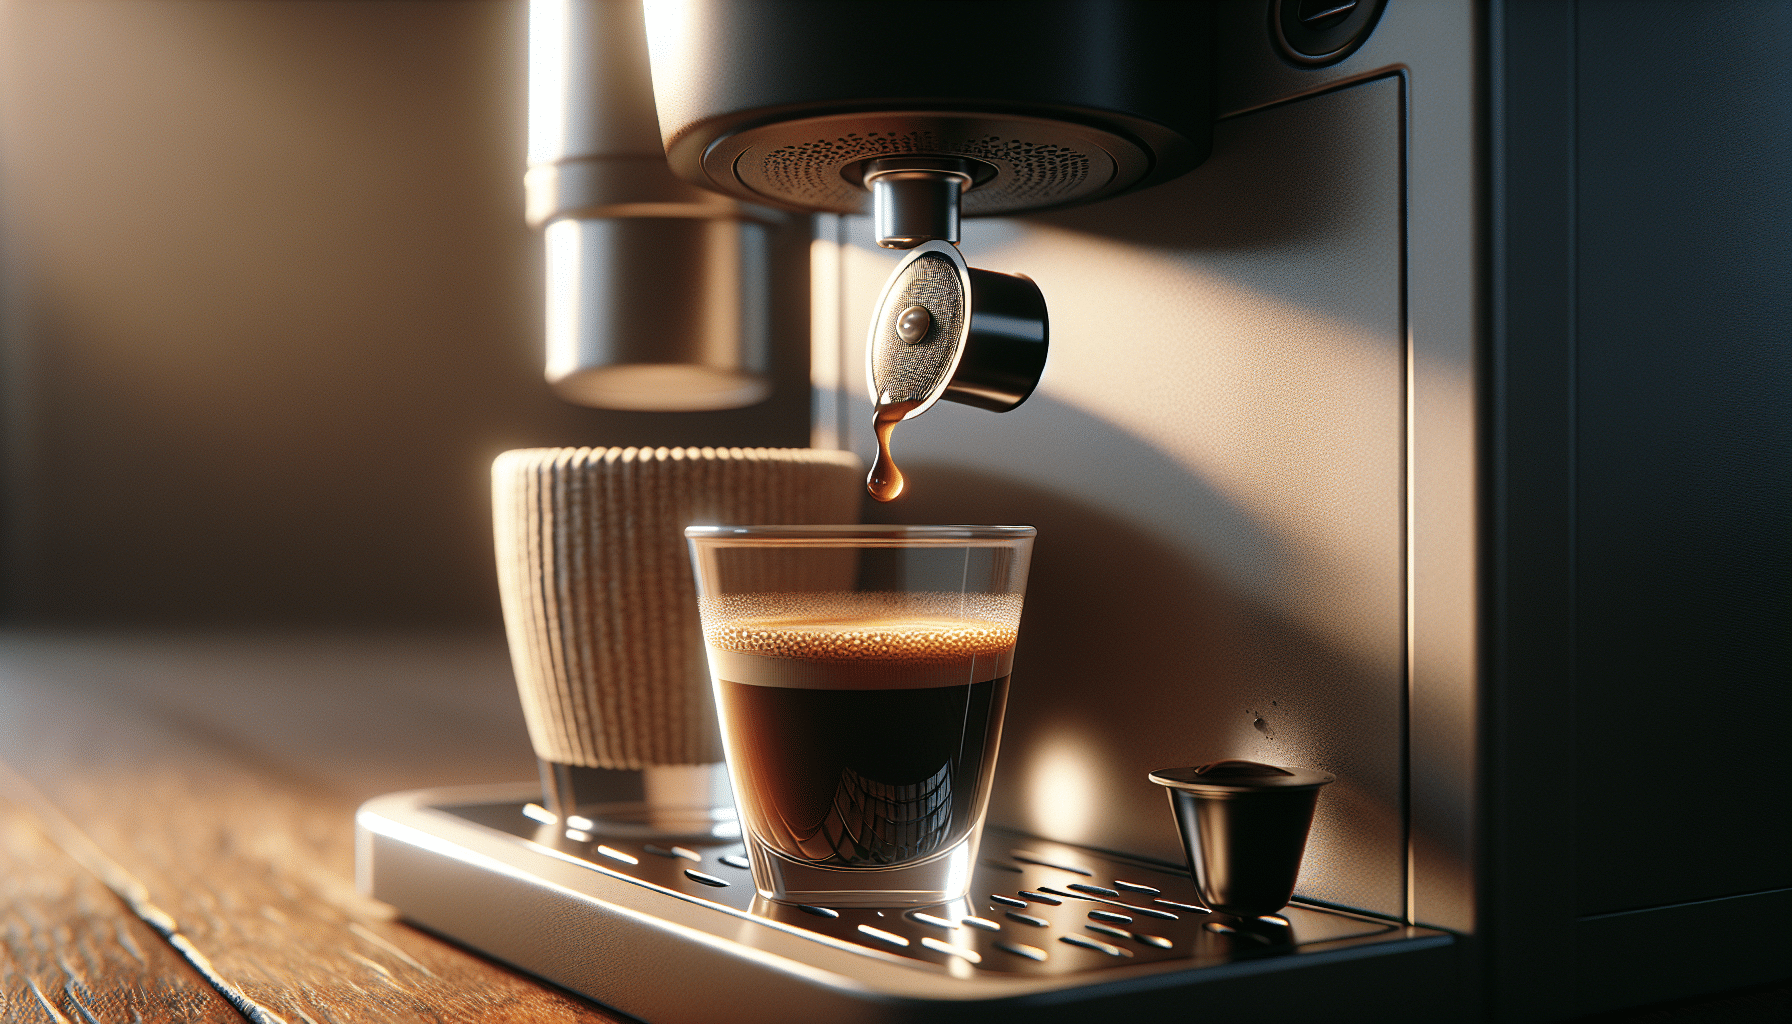 Perfekt ausgerichtete kaffeepads in die nescafe-maschine einlegen